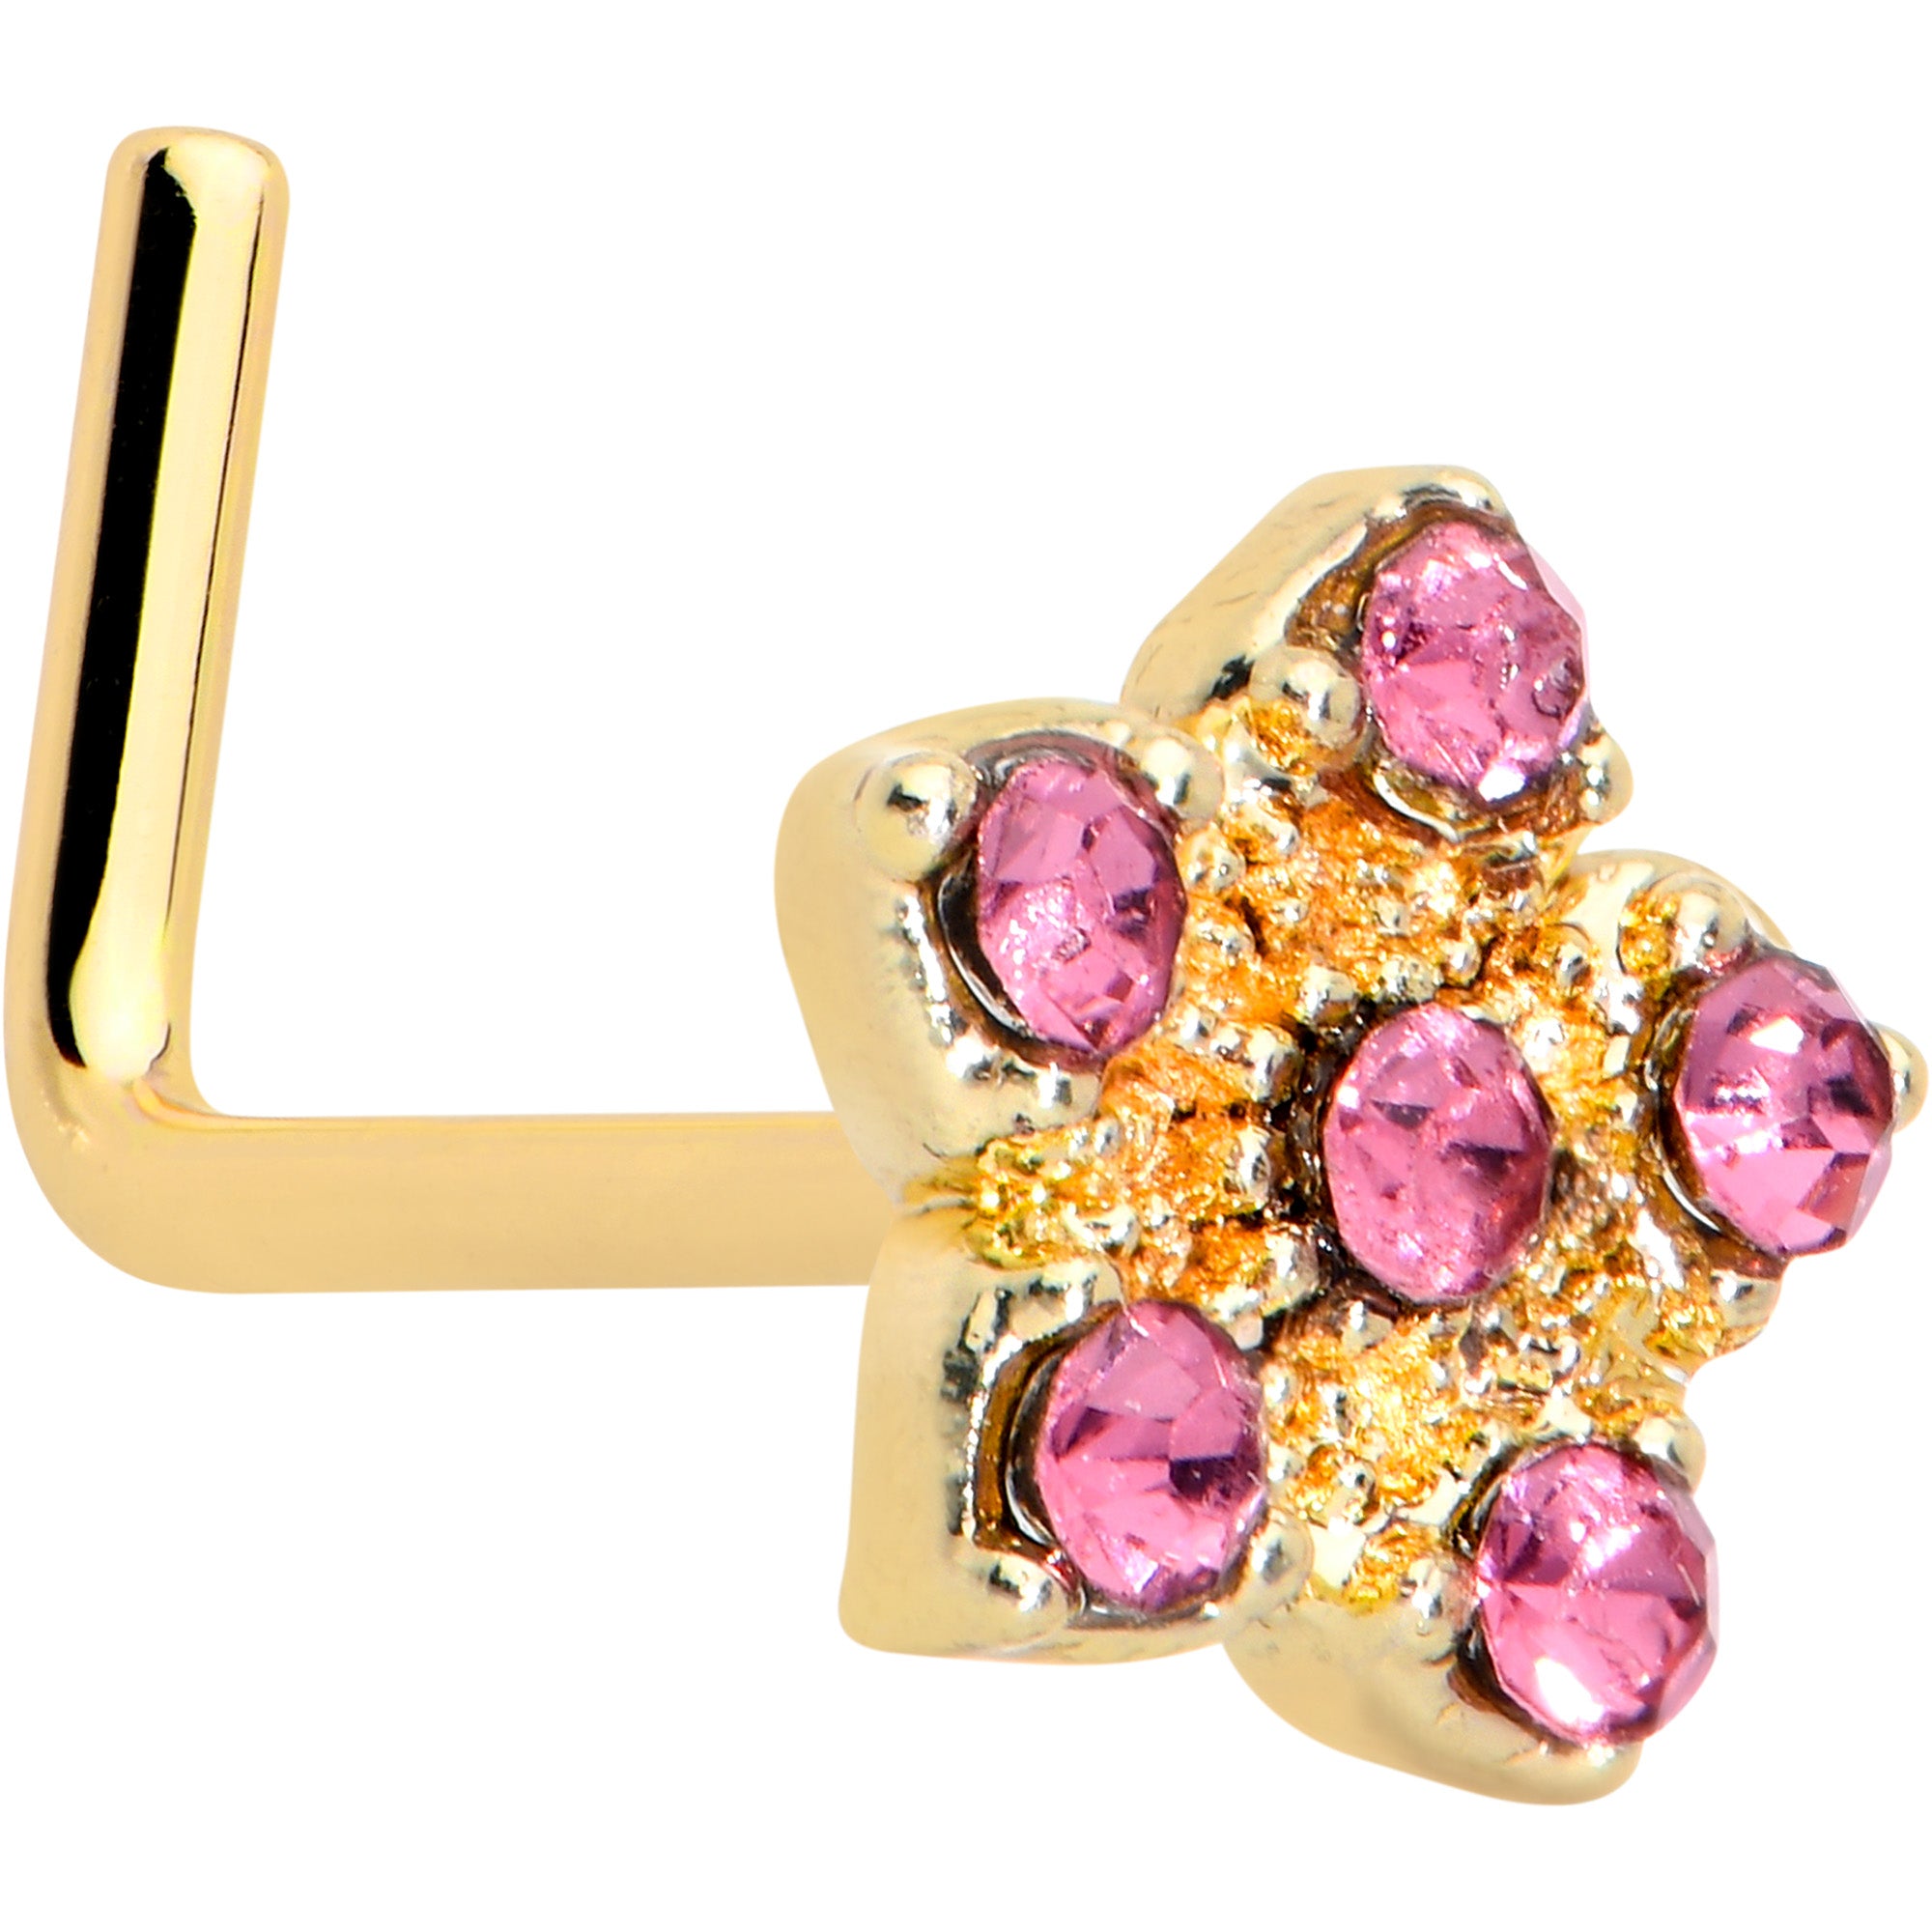 20 Gauge 7mm Pink Gem Gold Tone Texture Star Flower L Shape Nose Ring